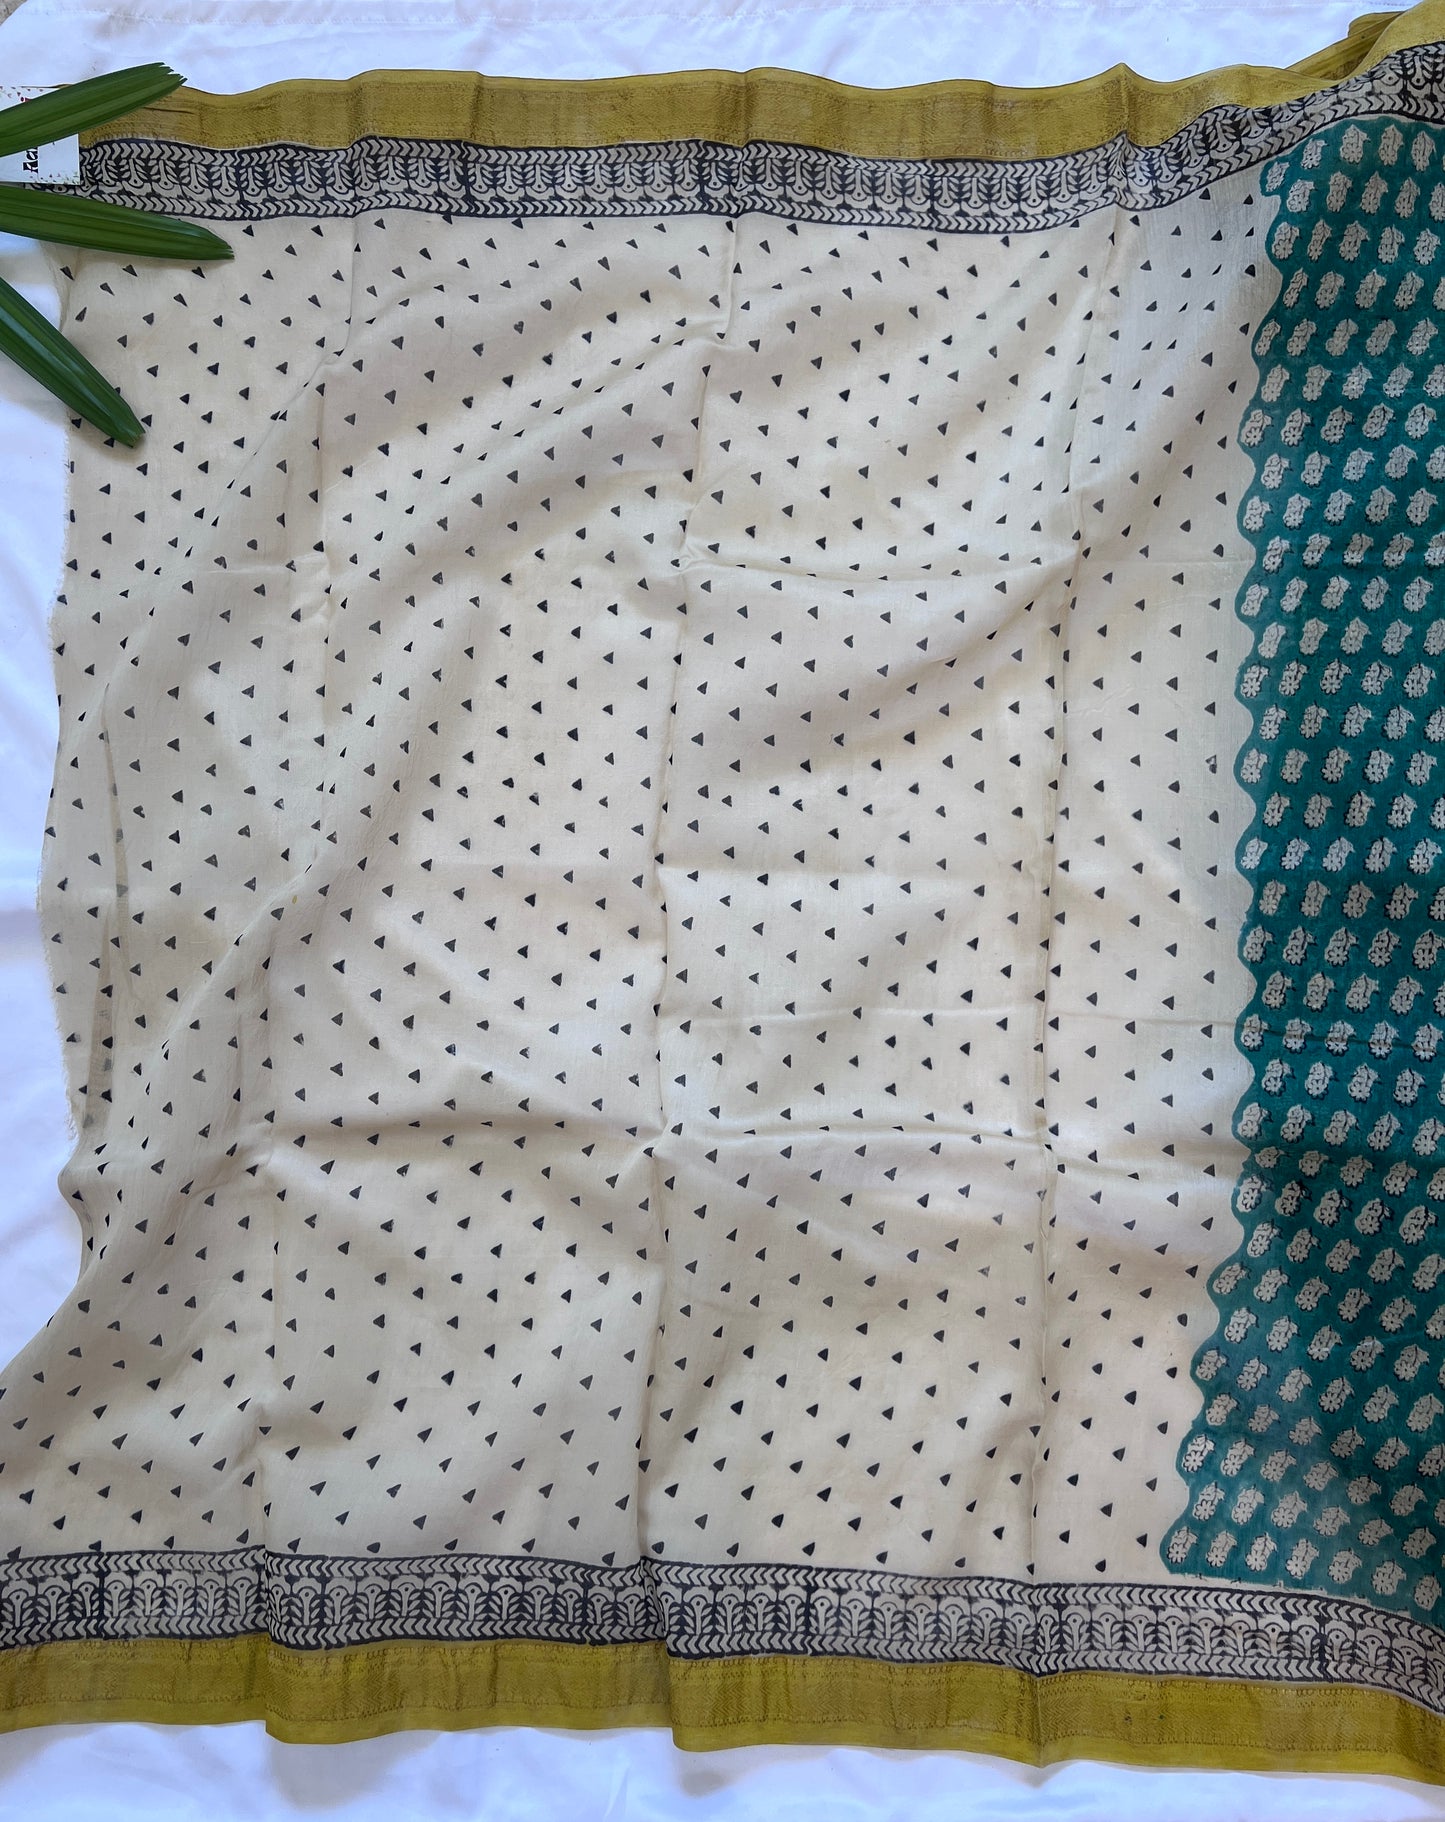 Forest Green & Citrine Yellow Maheshwari Cotton Silk Saree